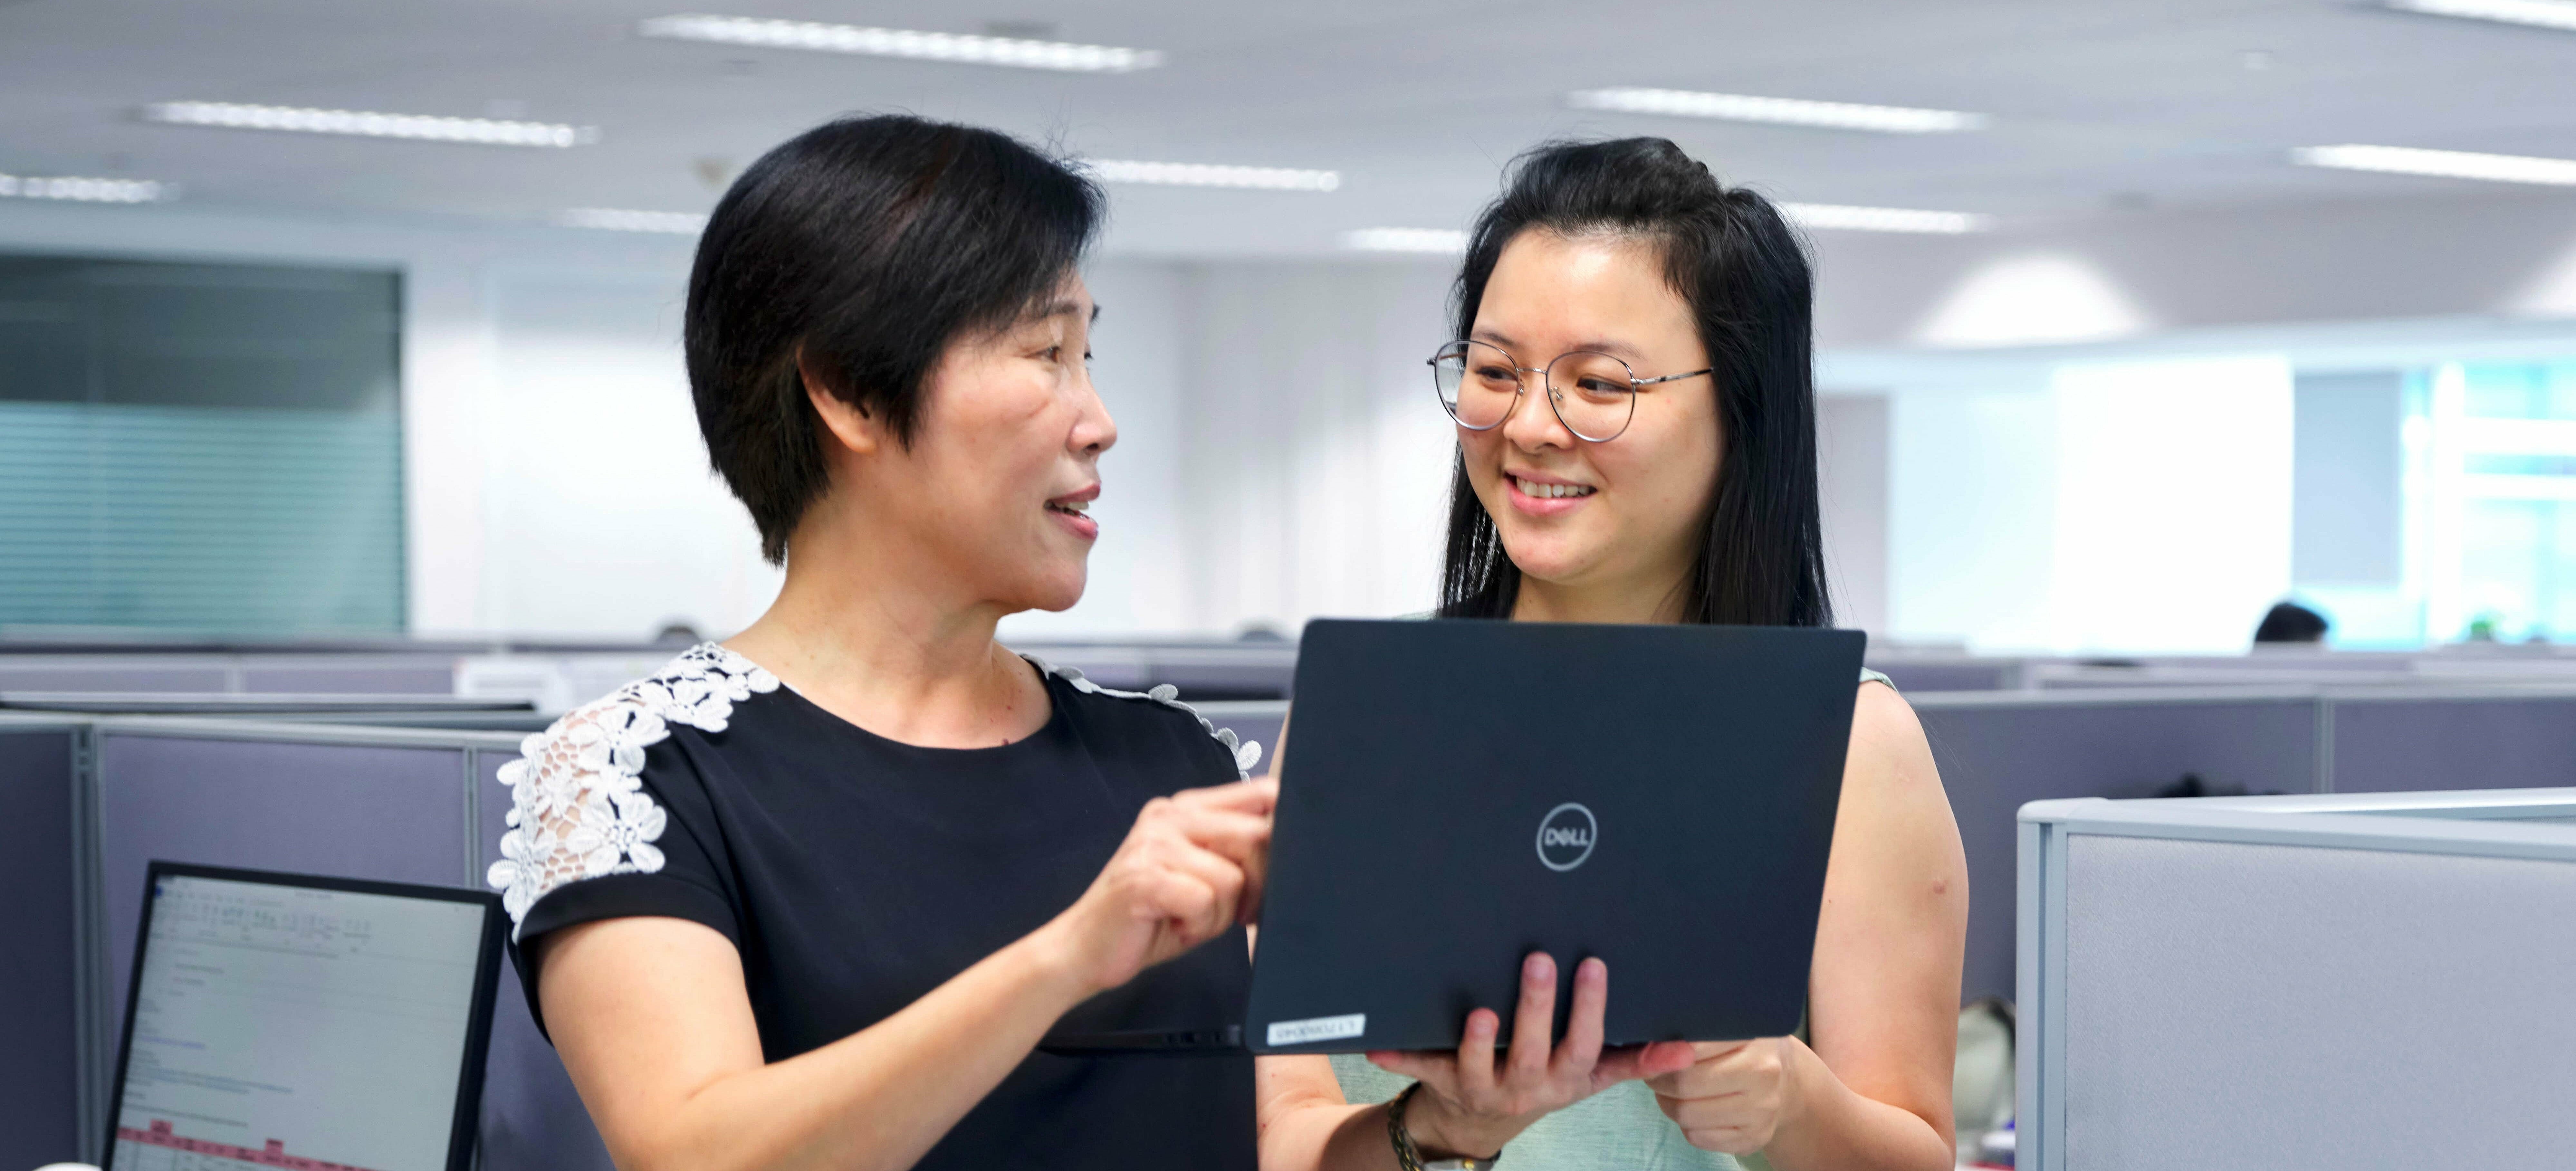 Büroangestellte halten Laptop in der Hand und planen Flexitanklogistik